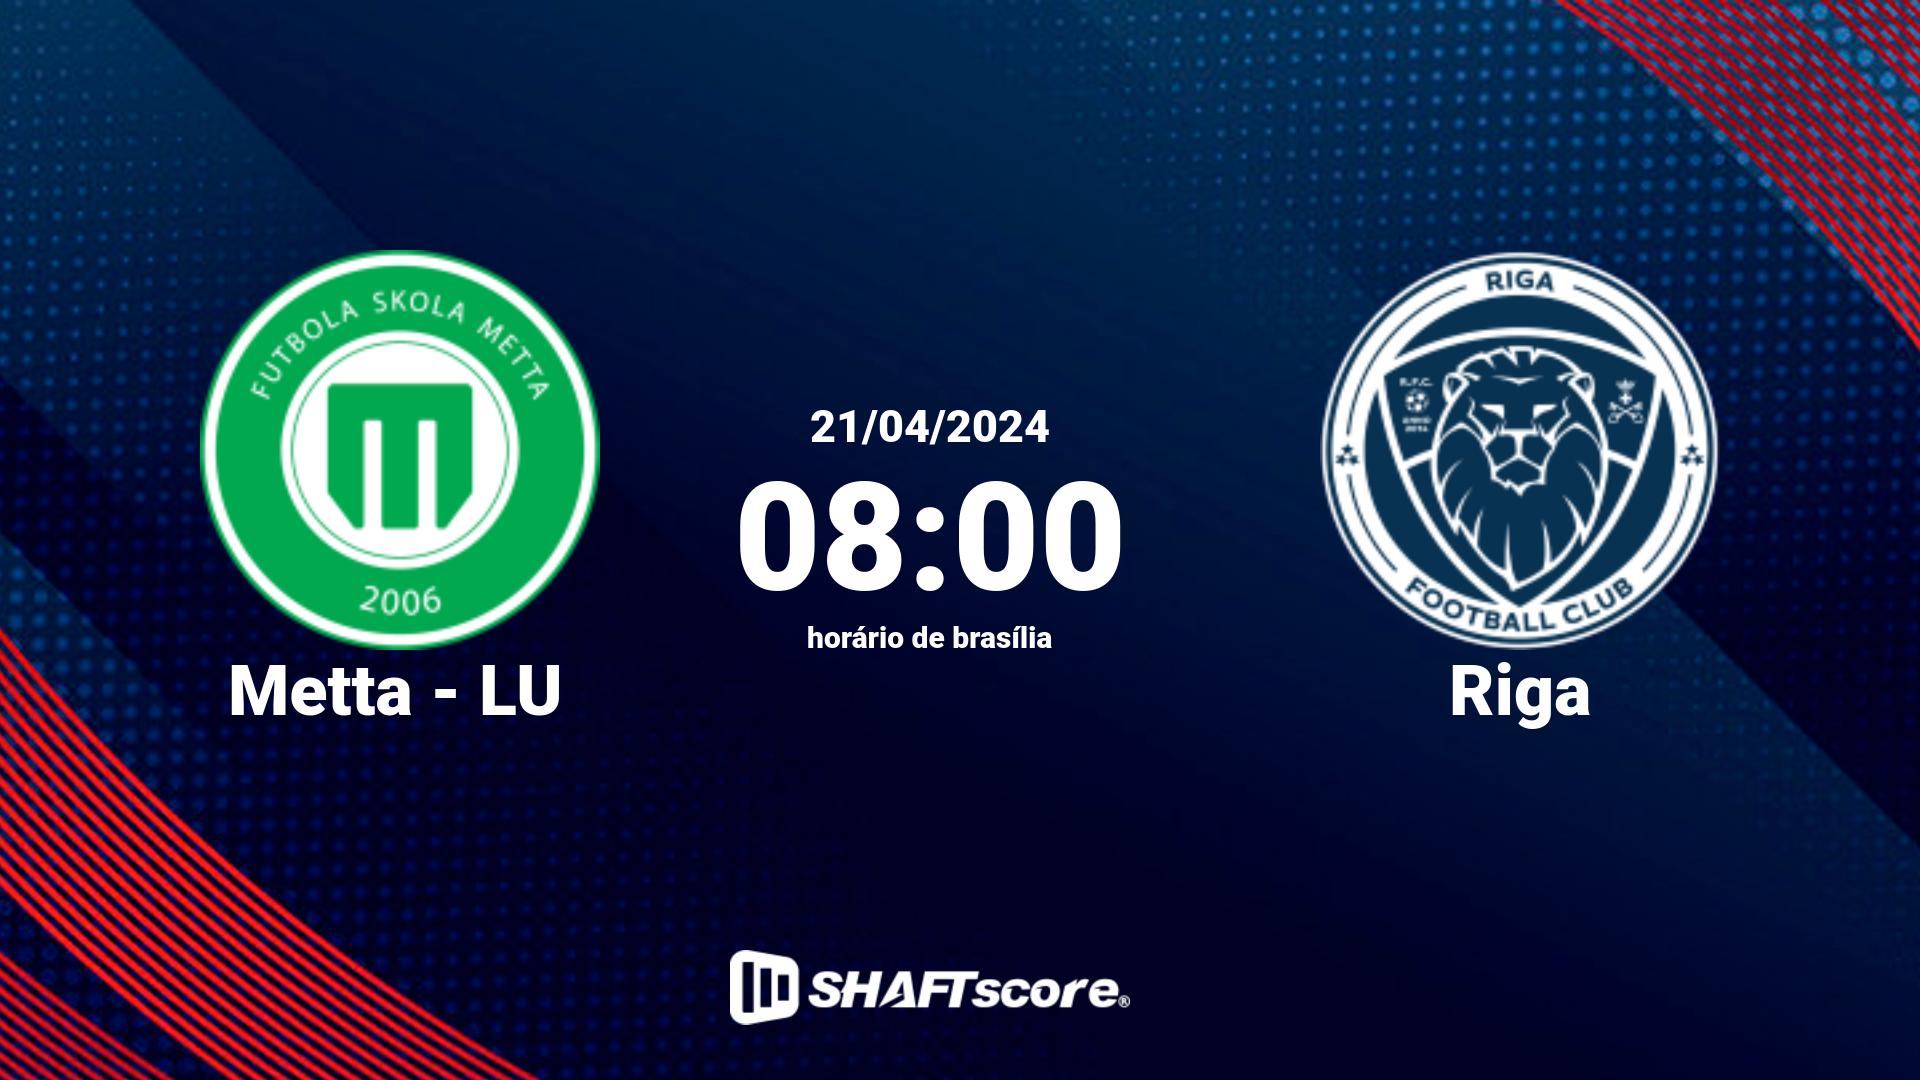 Estatísticas do jogo Metta - LU vs Riga 21.04 08:00